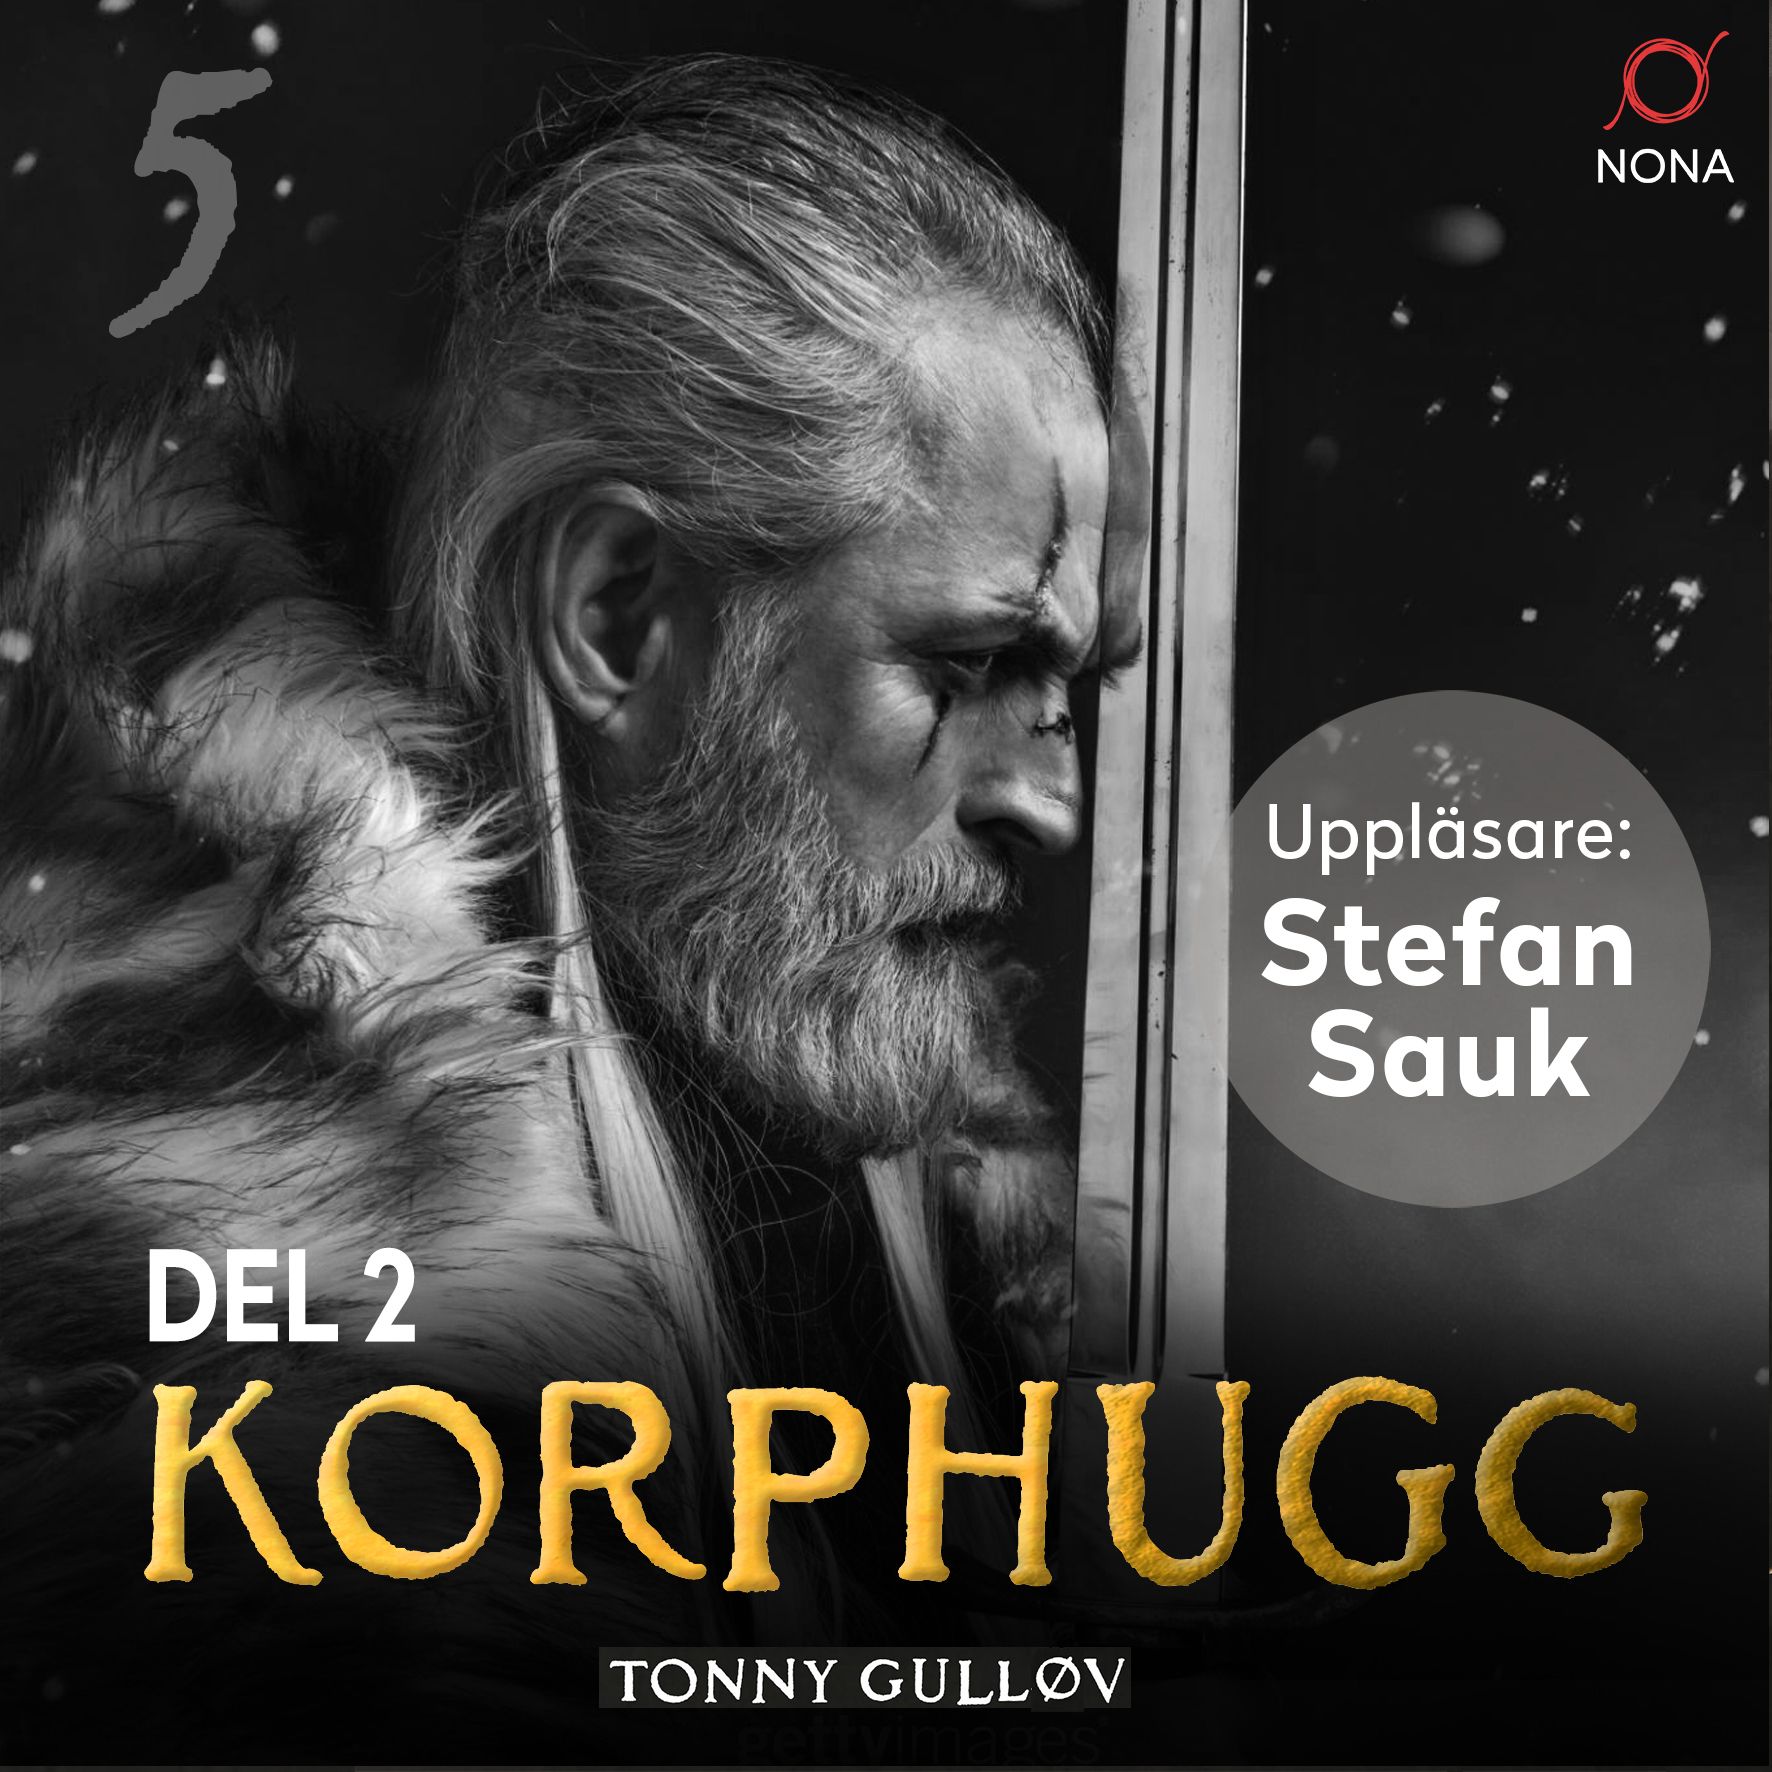 Korphugg Del 2, ljudbok av Tonny Gulløv